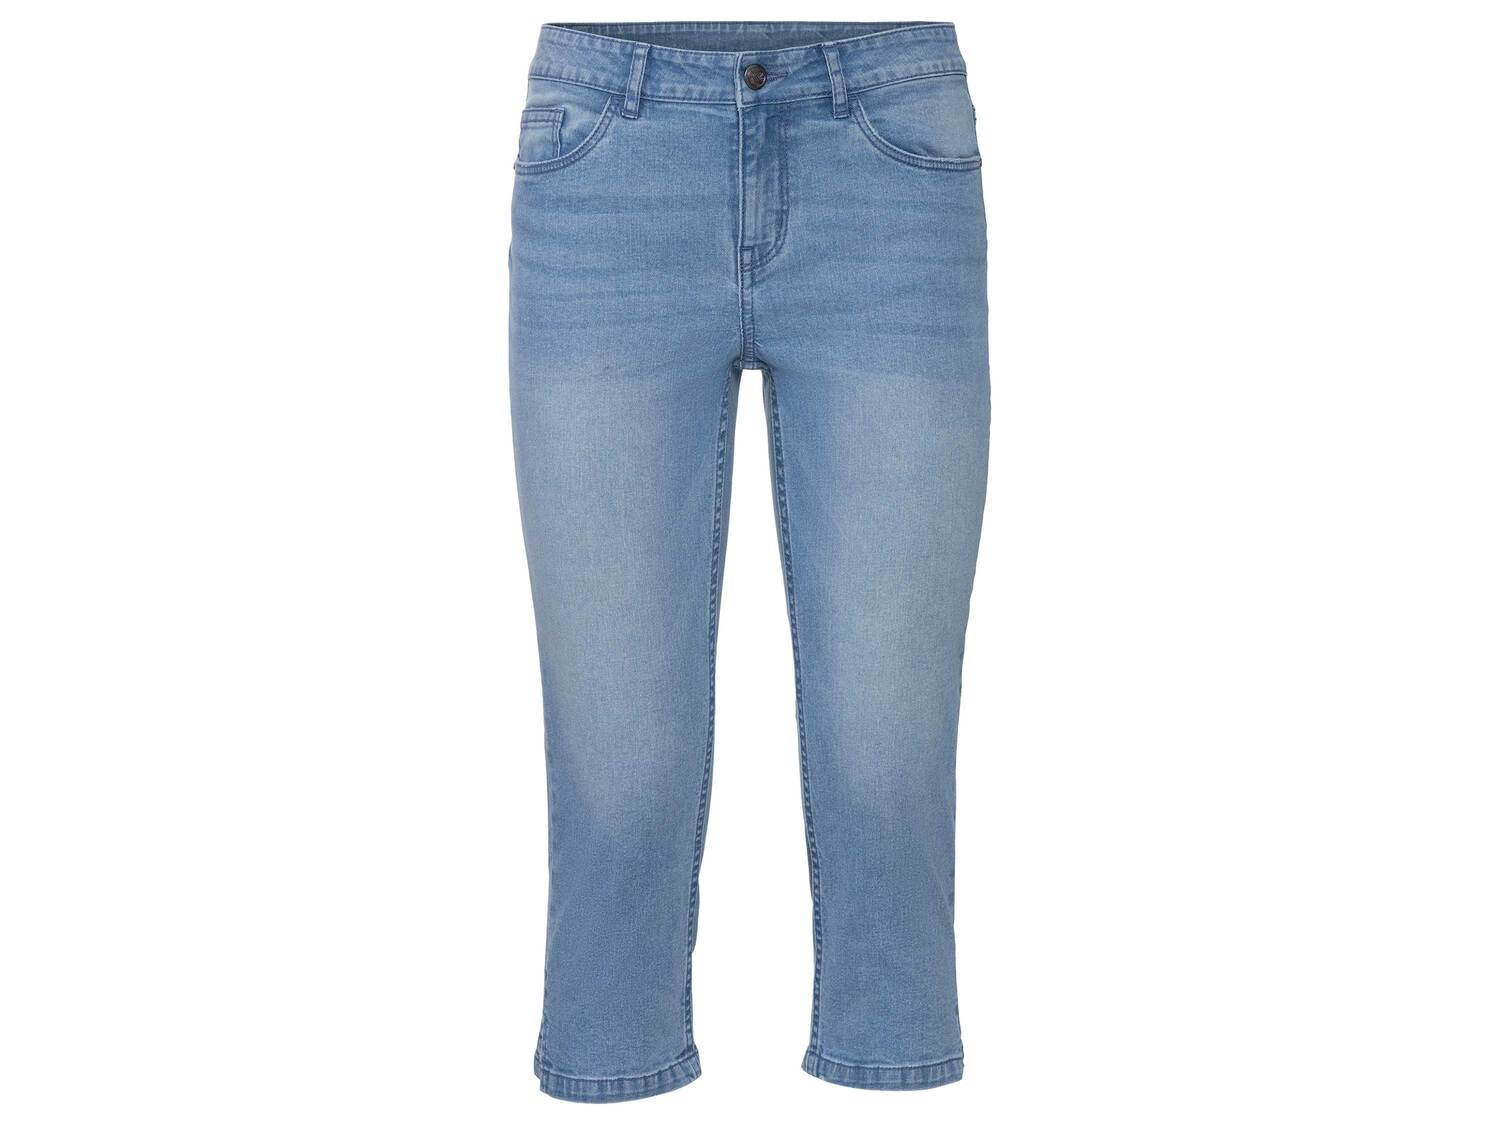 Corsaire en jean coton bio , le prix 6.99 € 
- Du 36 au 48 selon modèle
- Ex. ...